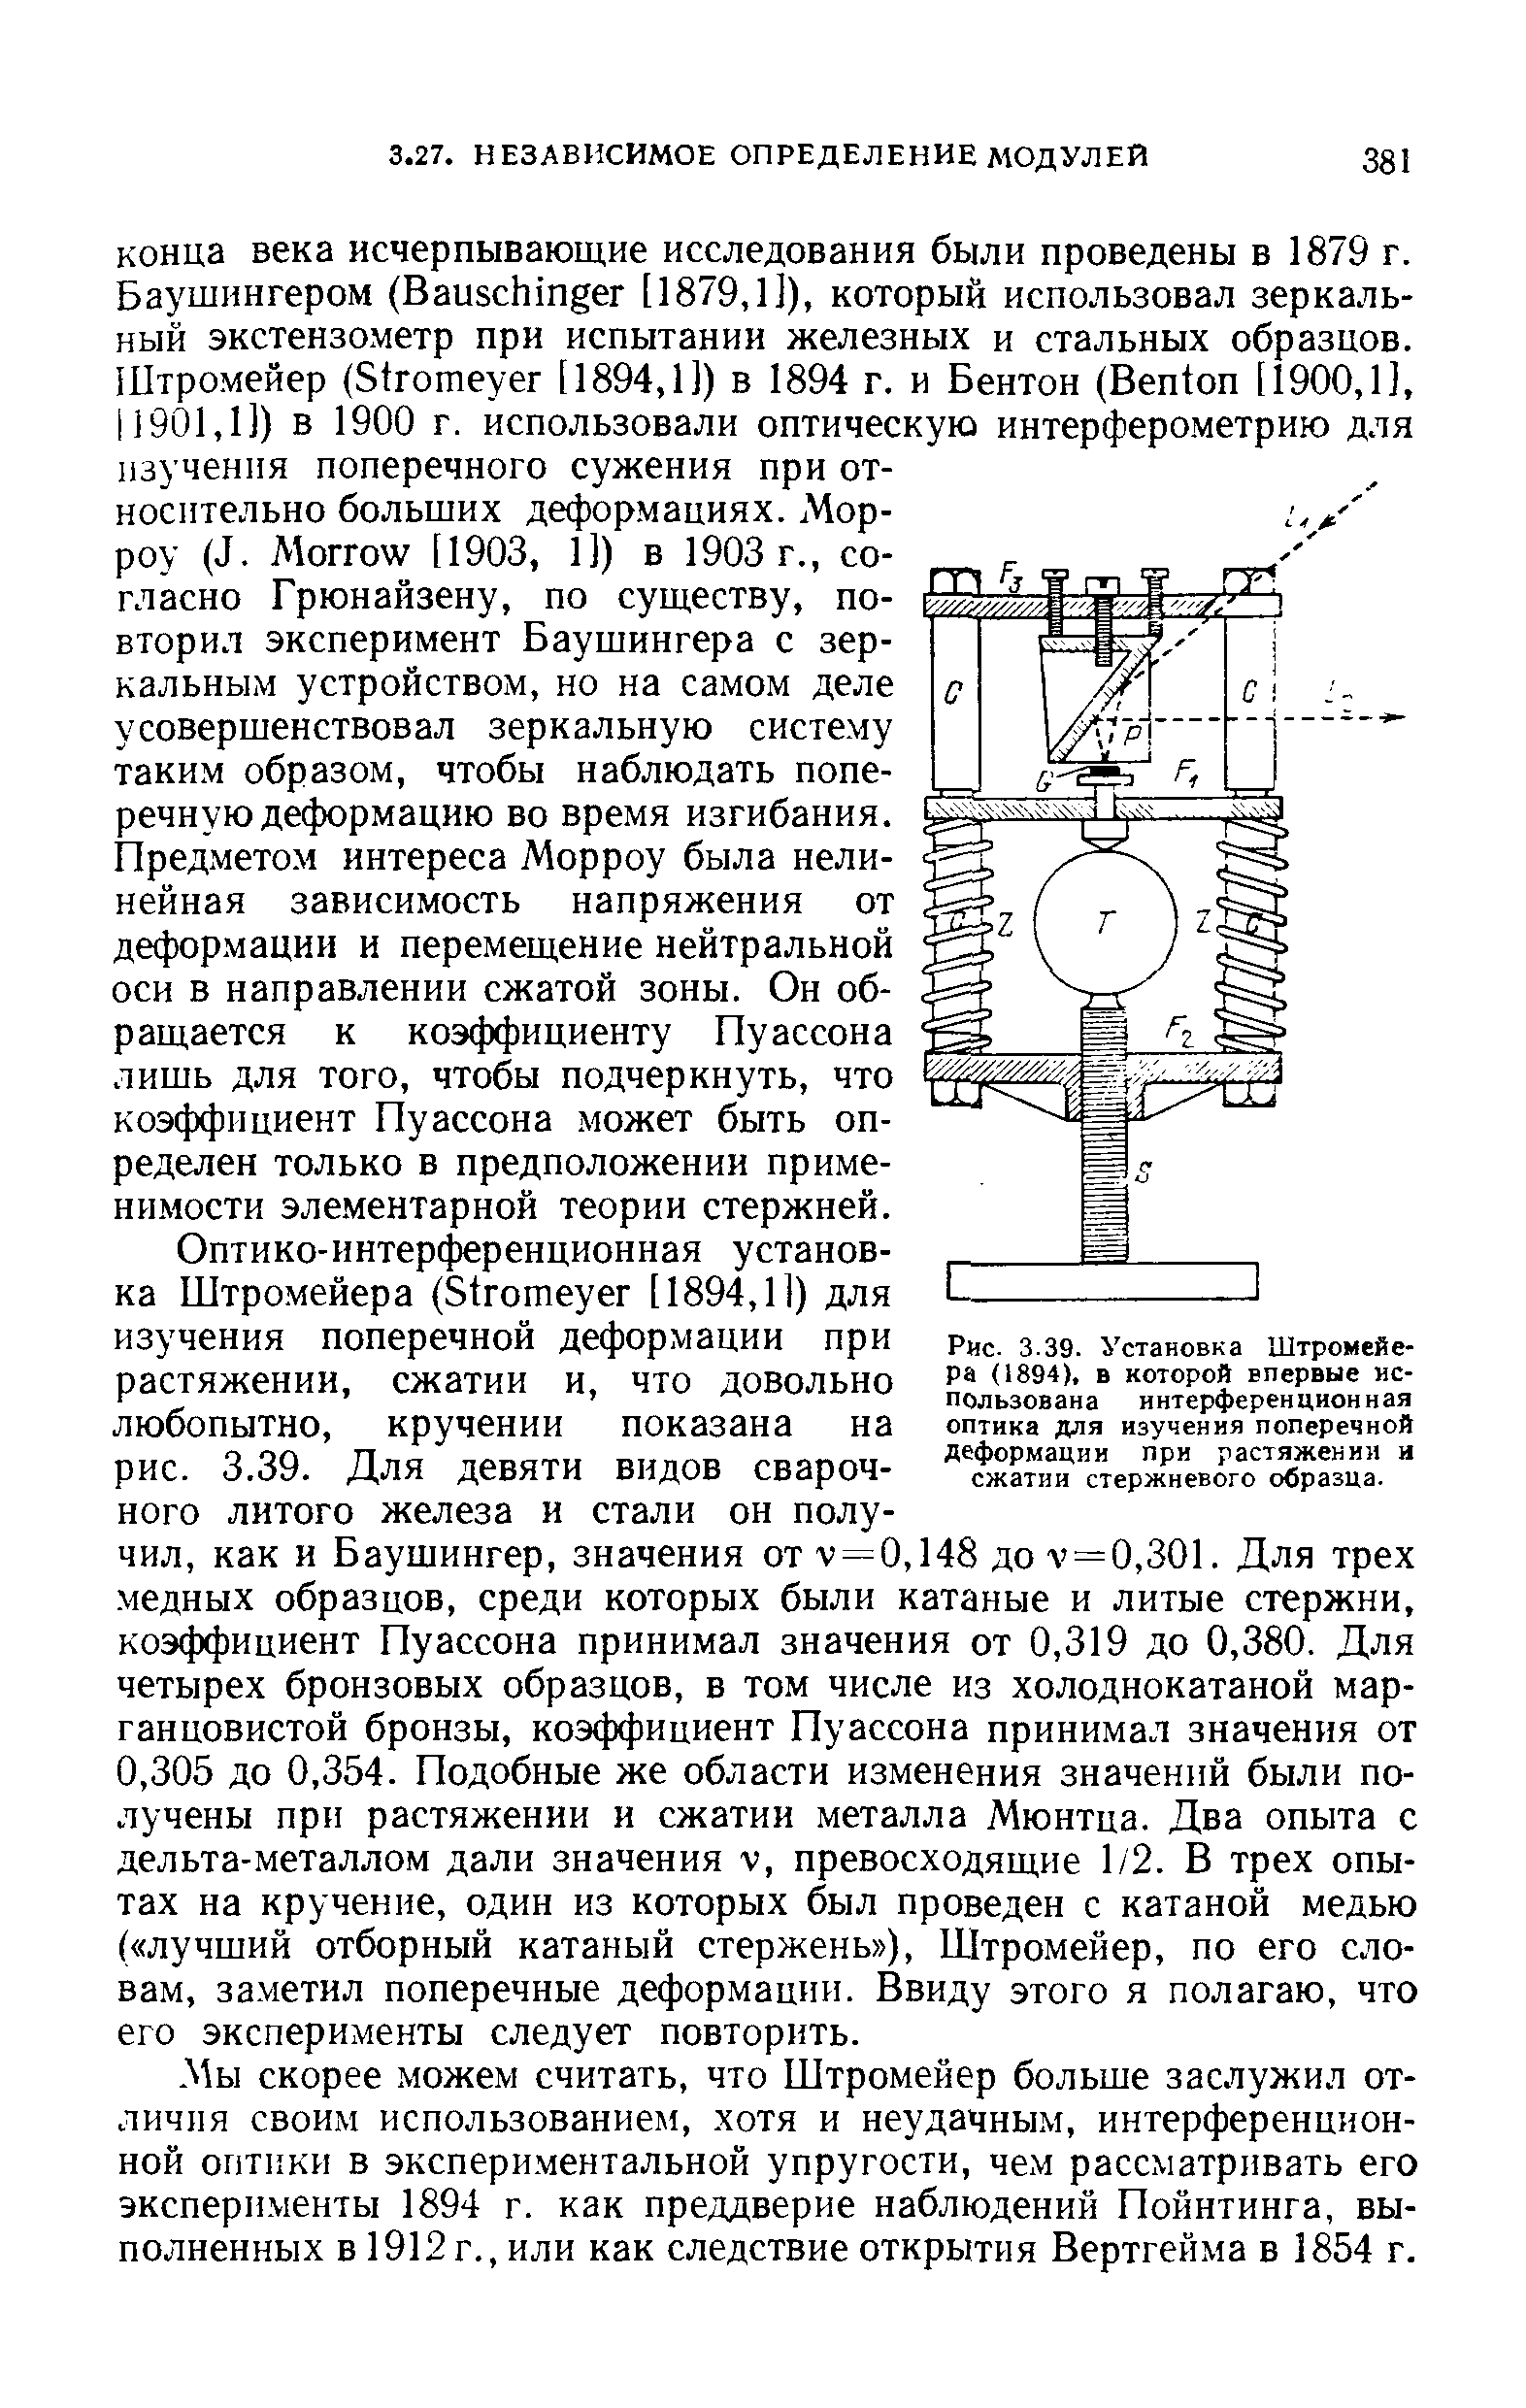 Рис. 3.39. Установка Штромейера (1894), в которой впервые использована интерференционная оптика для изучения <a href="/info/5860">поперечной деформации</a> при растяжении и сжатии стержневого образца.
